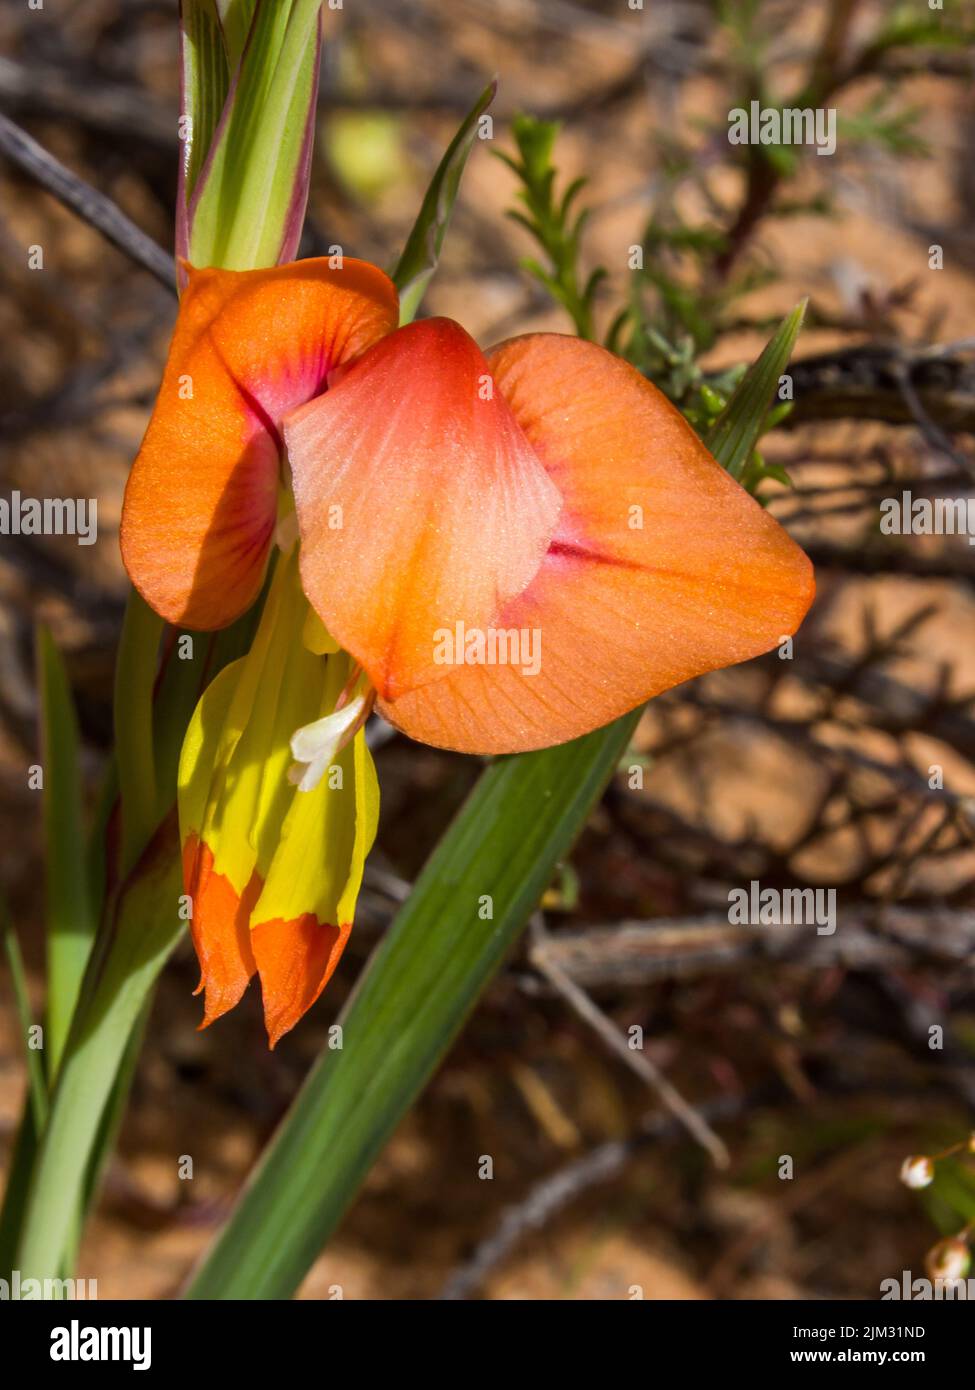 La flor anaranjada de un Gladiolus alatus, un tipo de iris que crece salvaje en la región de Namaqualand en Sudáfrica Foto de stock